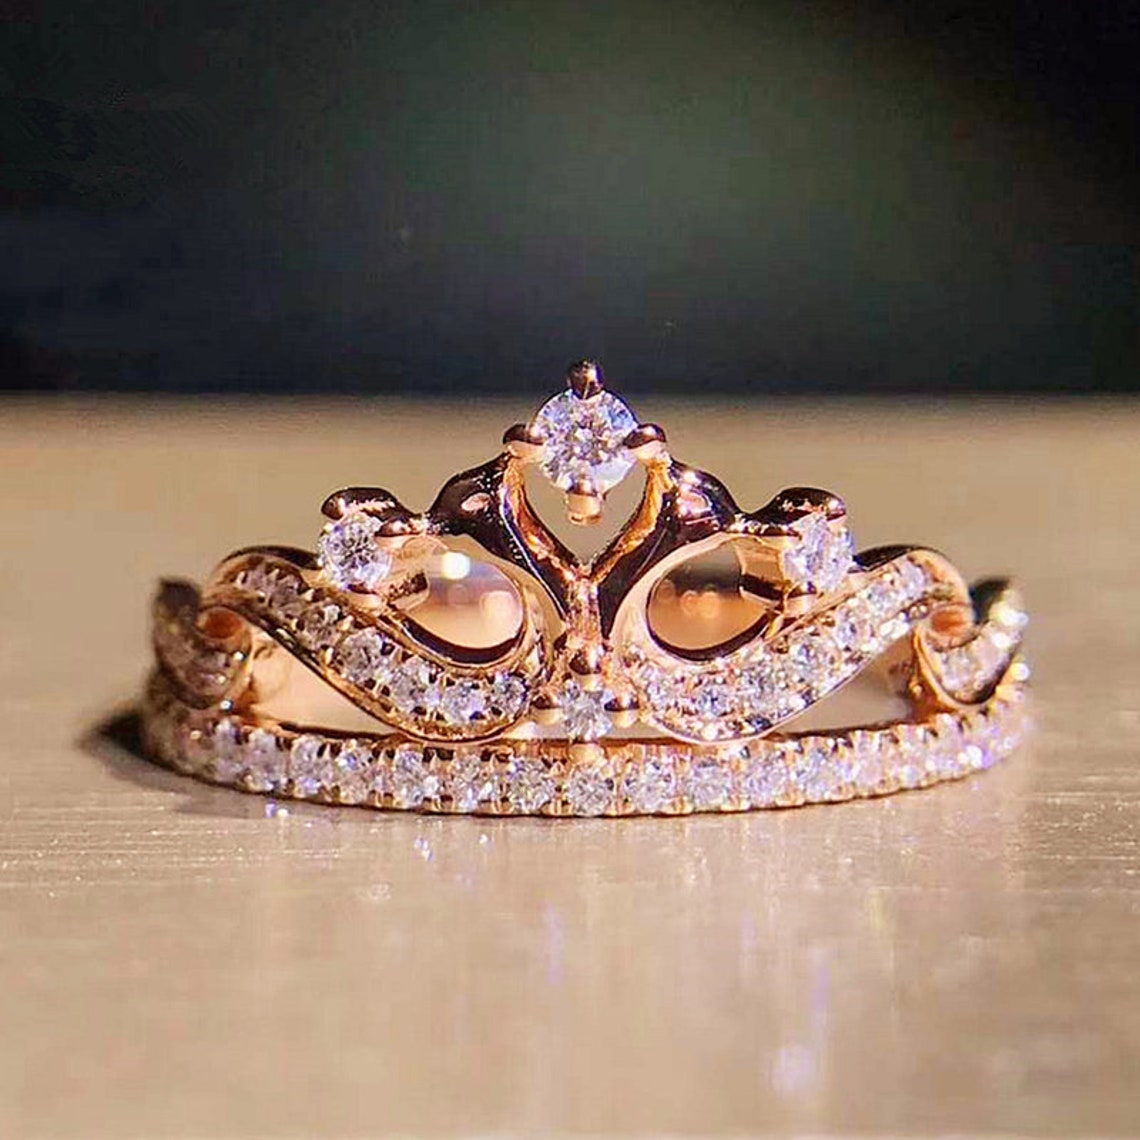 Diamond Tiara Ring in Solid 18K Gold Diamond Crown Ring | Etsy